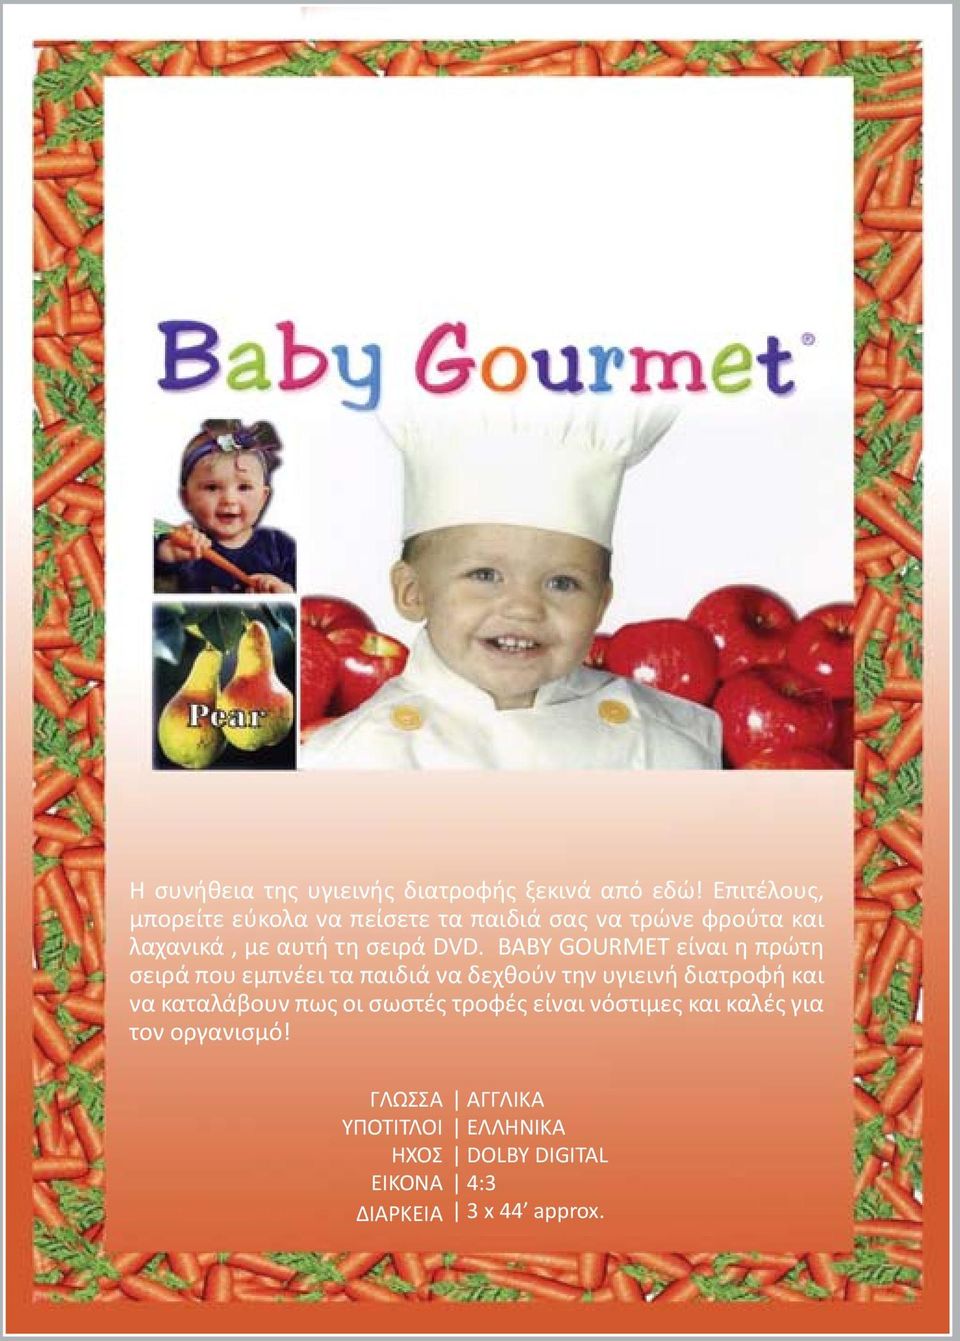 BABY GOURMET είναι η πρώτη σειρά που εμπνέει τα παιδιά να δεχθούν την υγιεινή διατροφή και να